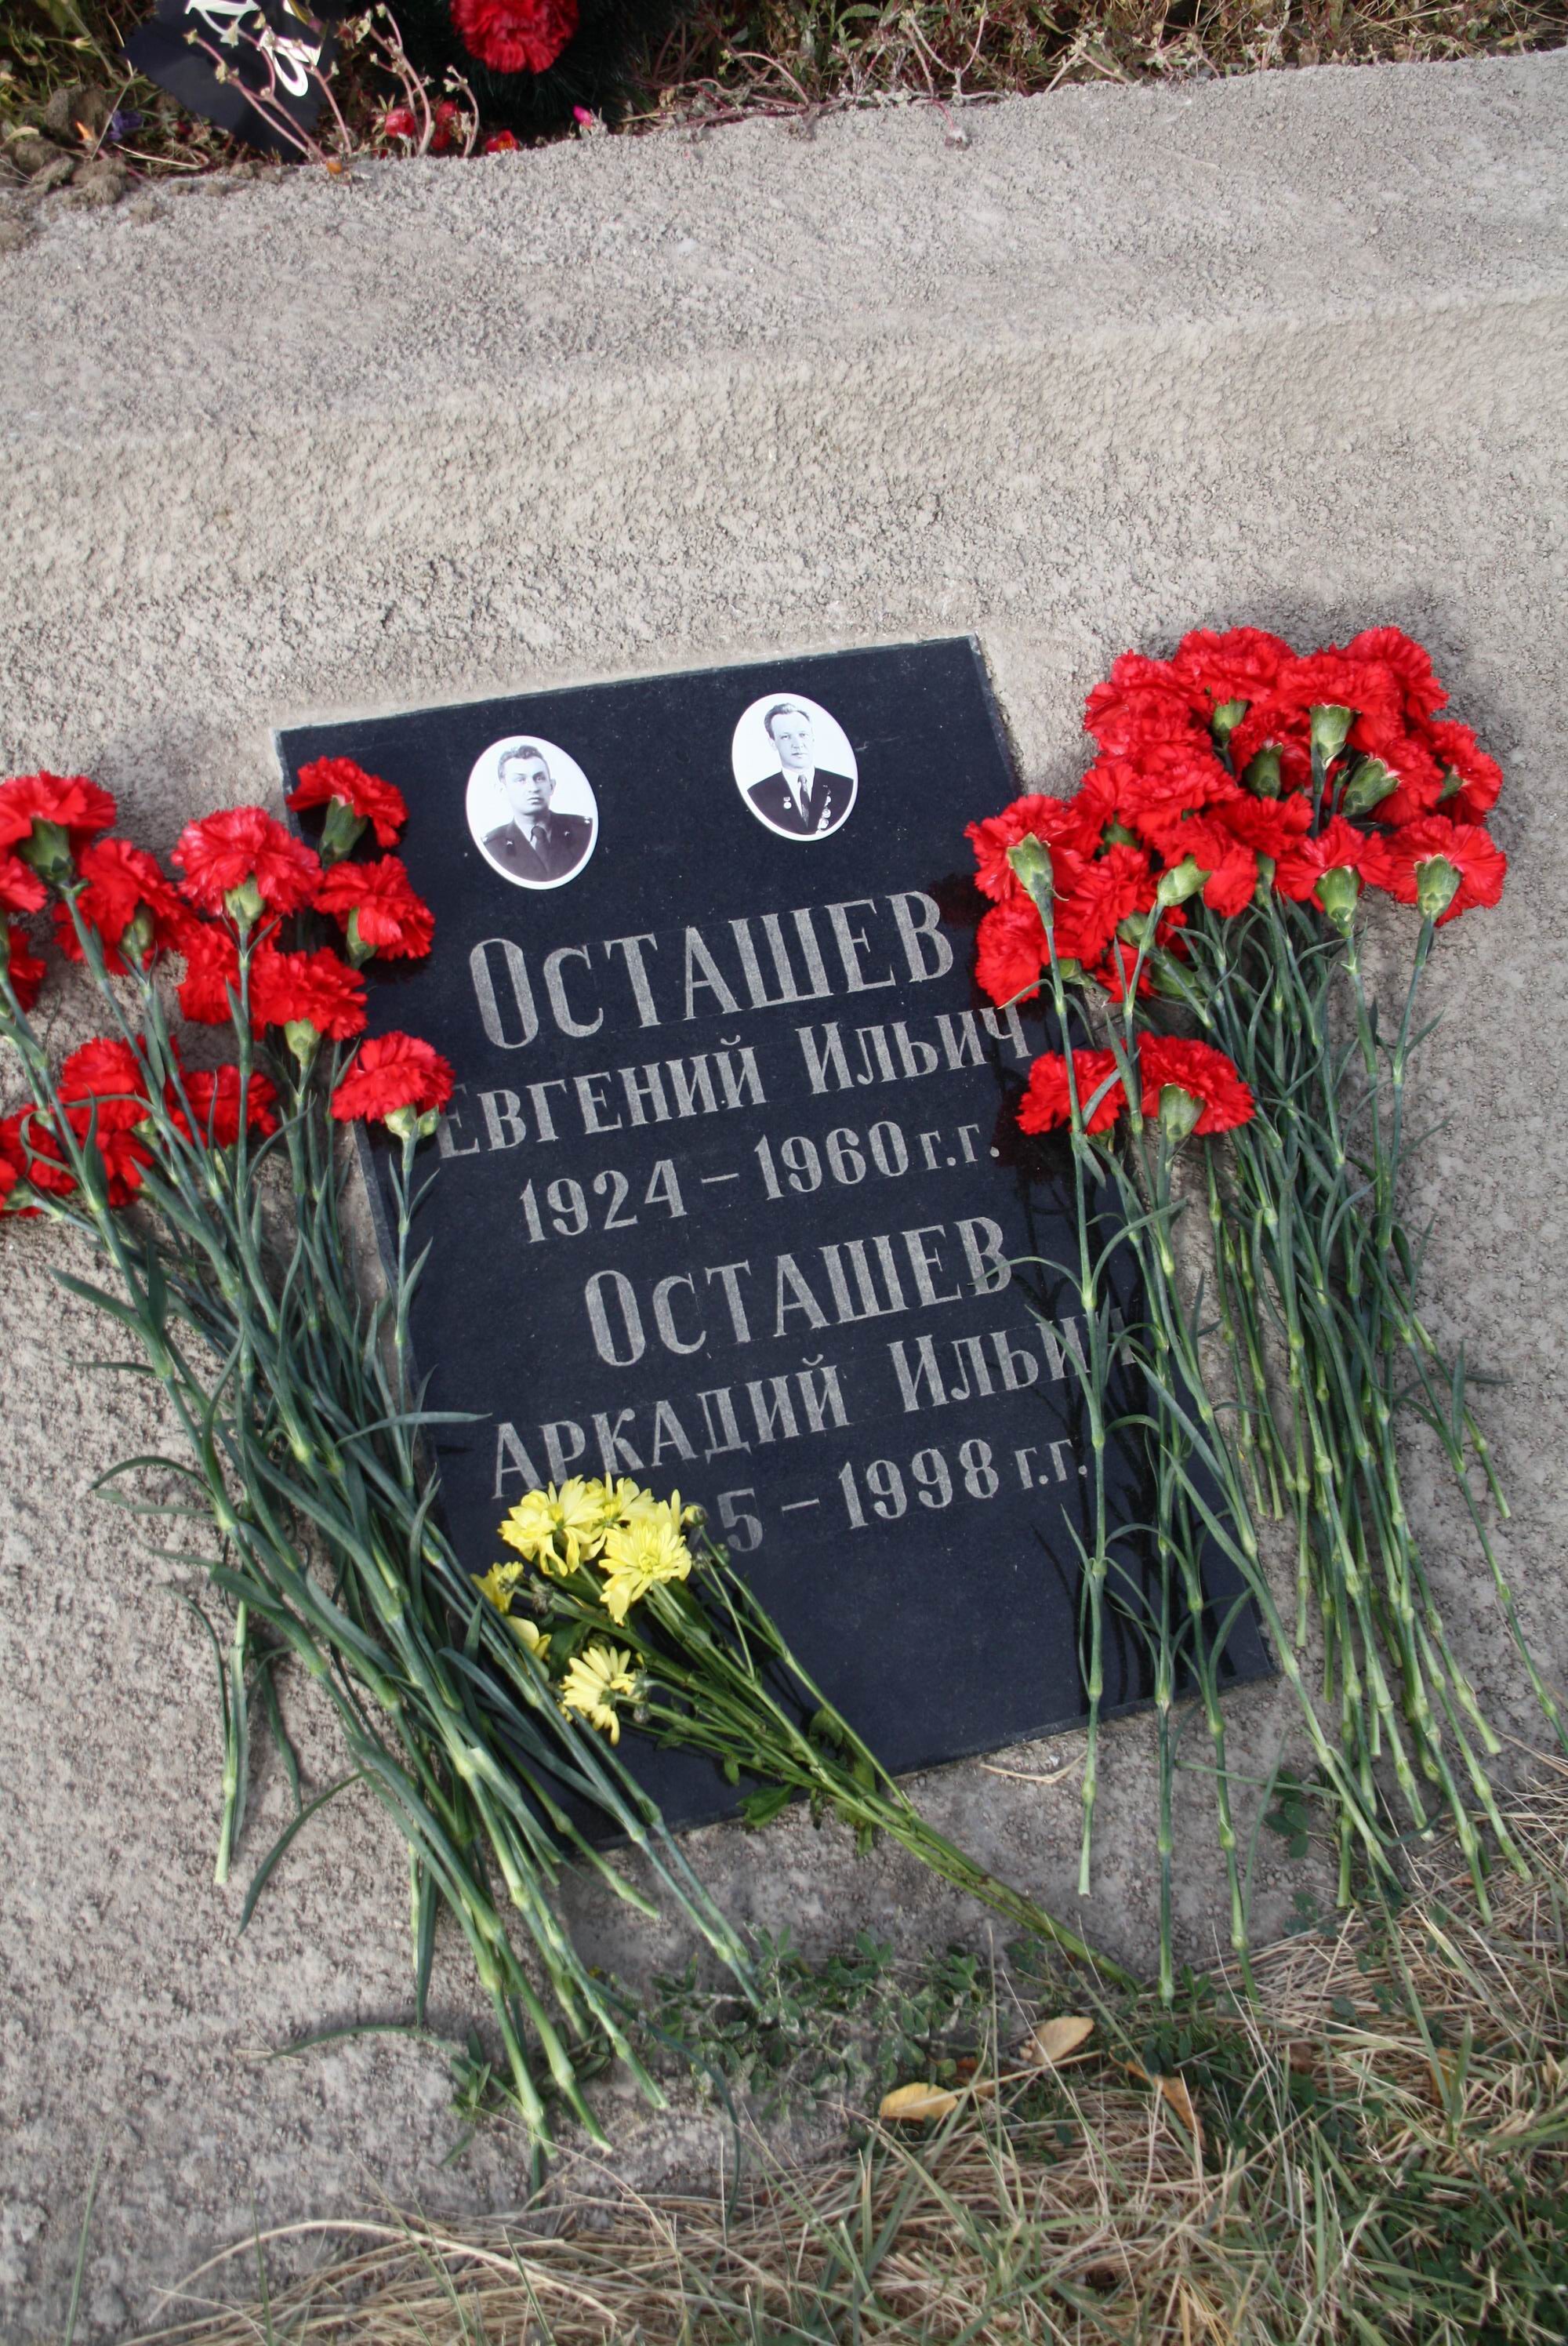 Место упокоения братьев Осташевых - Казахстан, г. Байконур, солдатский парк, братская могила жертв катастрофы 24.10.1960г.